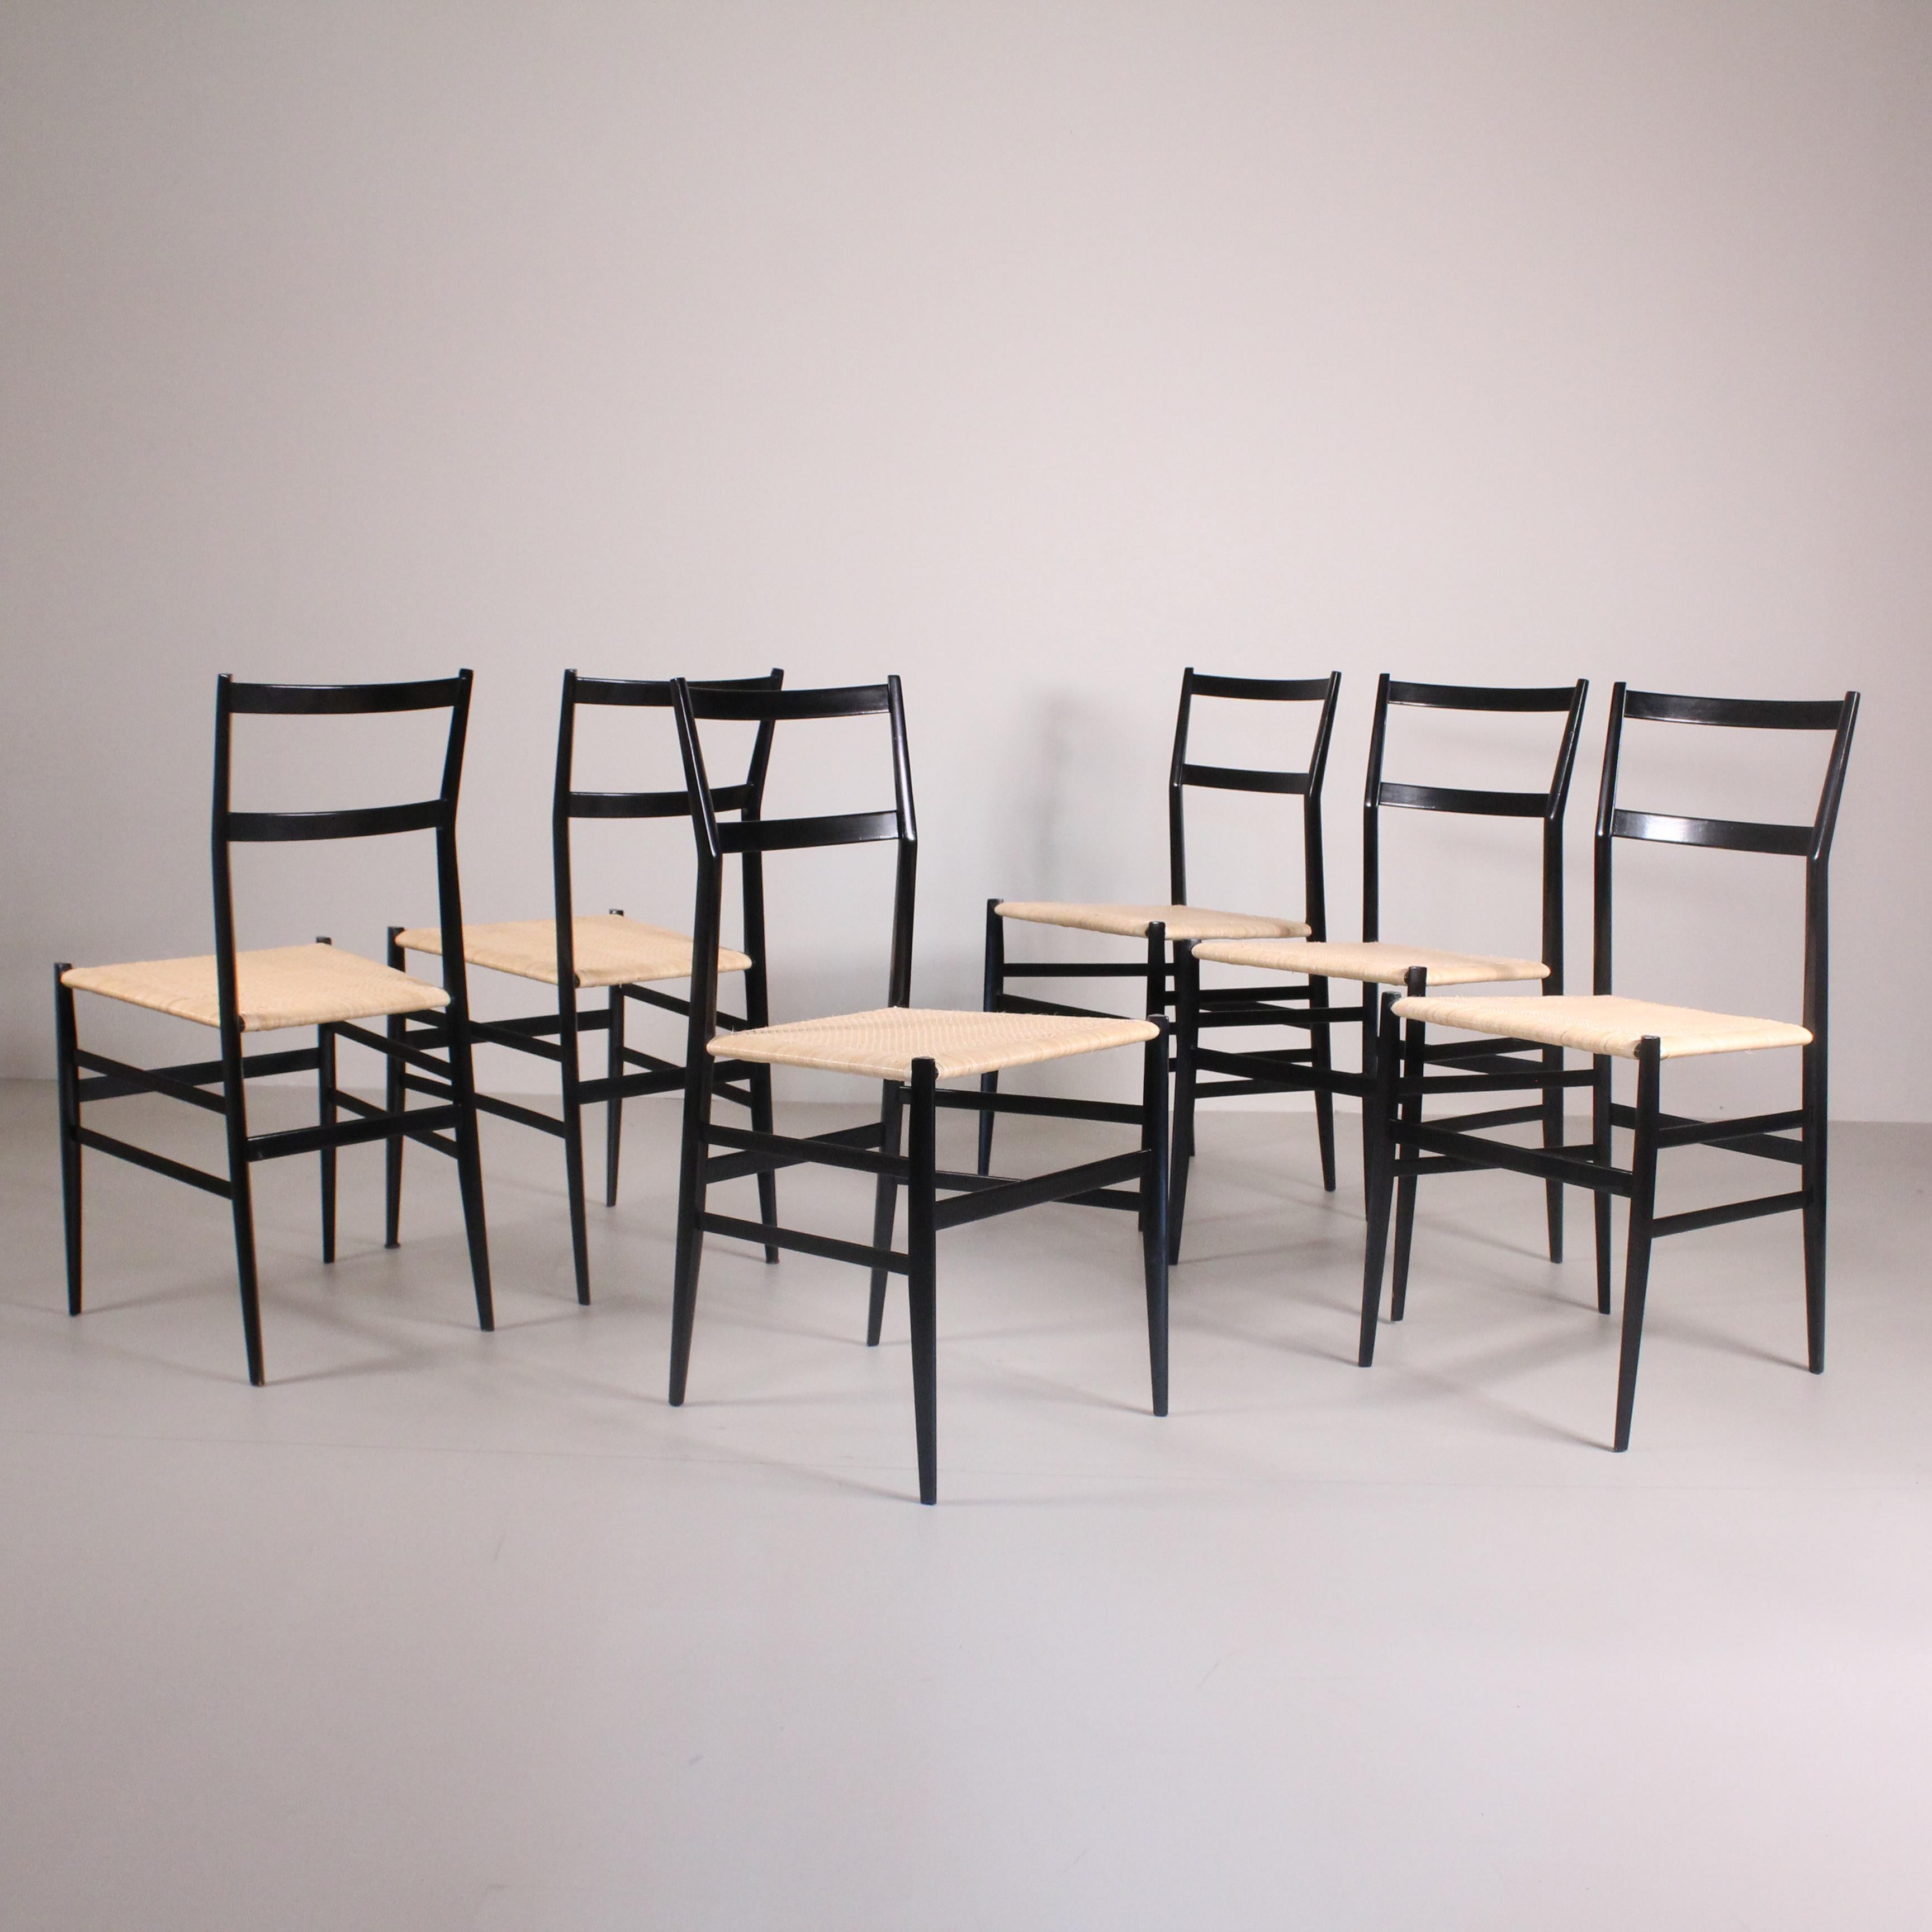 Cet incroyable ensemble de 6 chaises Superleggera conçues par Gio Ponti pour Cassina en 1950 incarne l'élégance et la légèreté de l'esthétique moderne. Ces chaises emblématiques se caractérisent par des lignes épurées qui reflètent la maîtrise du